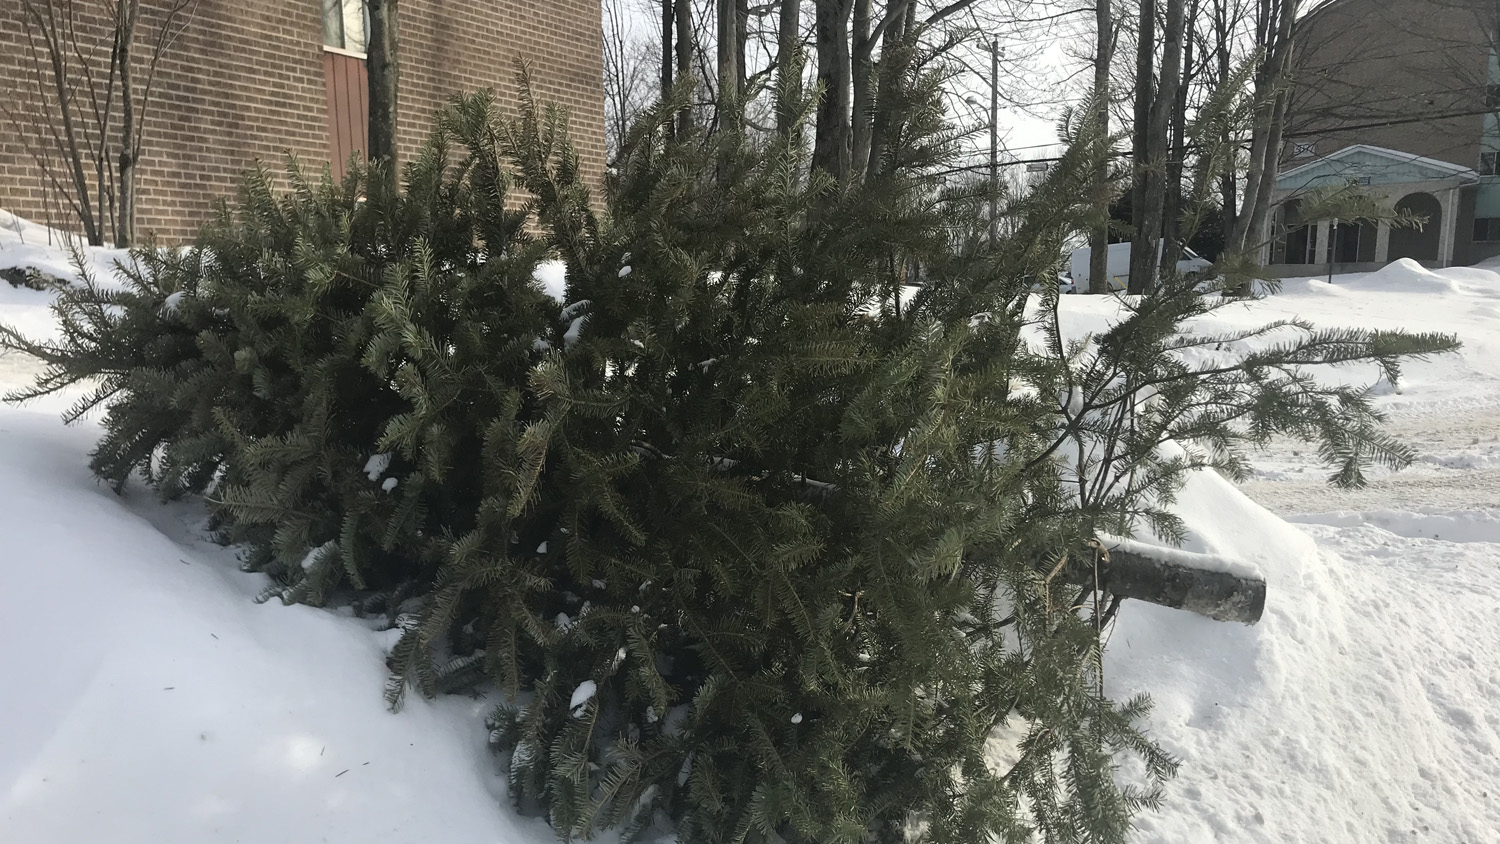 Christmas tree pickup this week around Sherbrooke